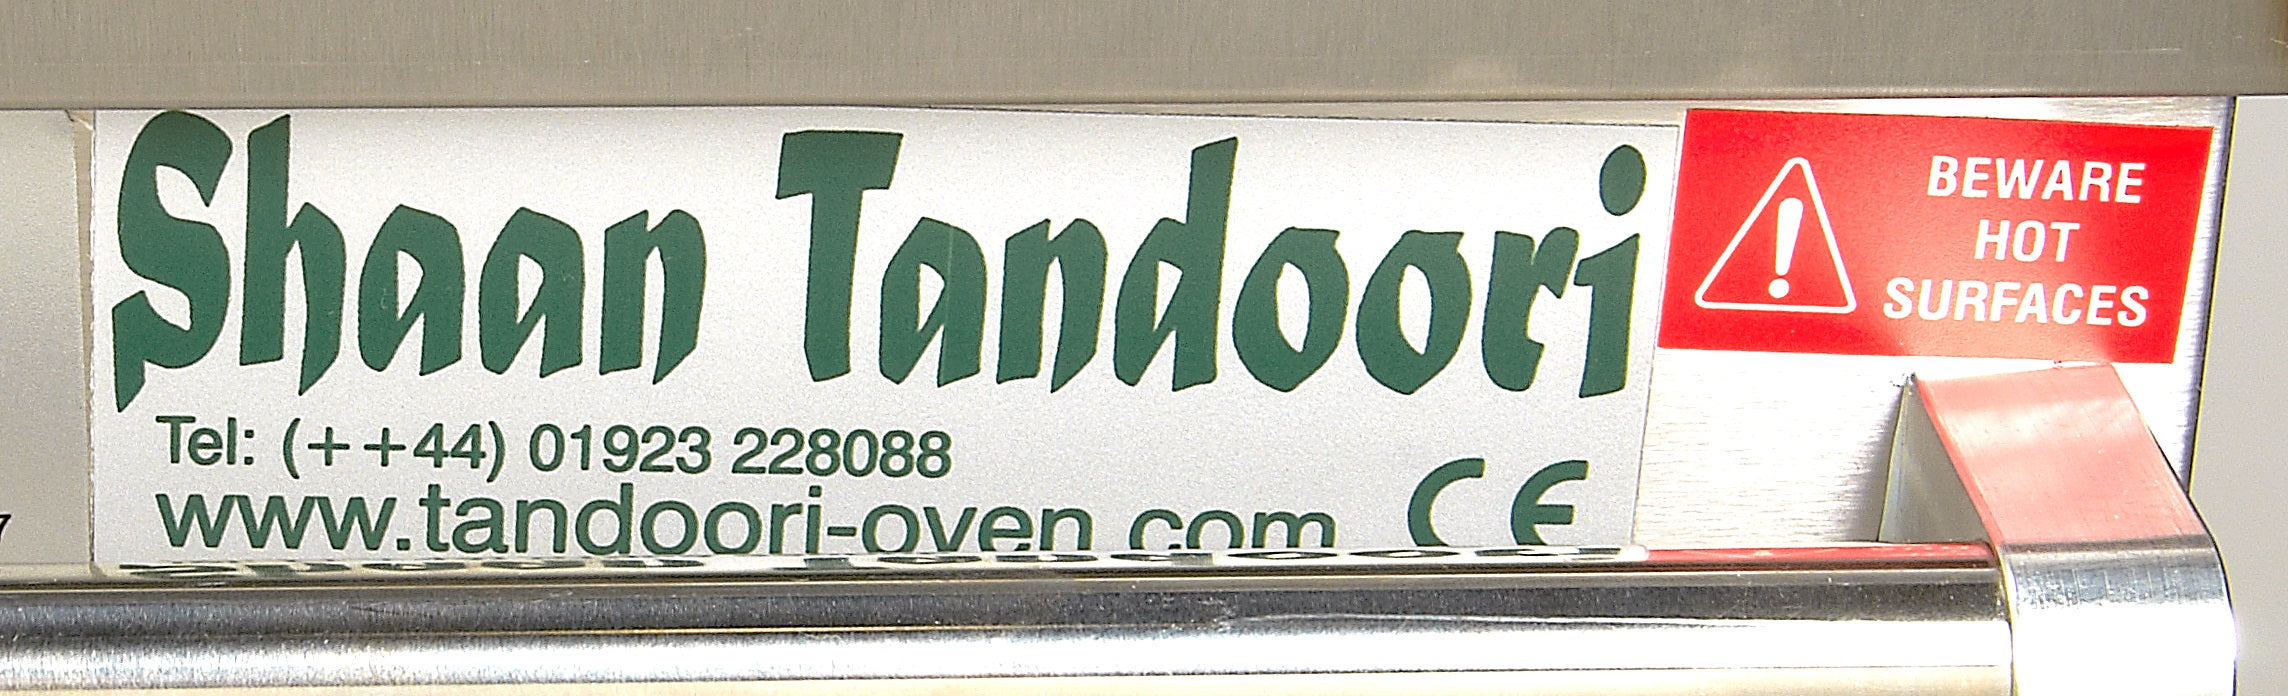 ETL Certified Shaan Tandoori Clay Oven - Jumbo Size- Gas-34 inch